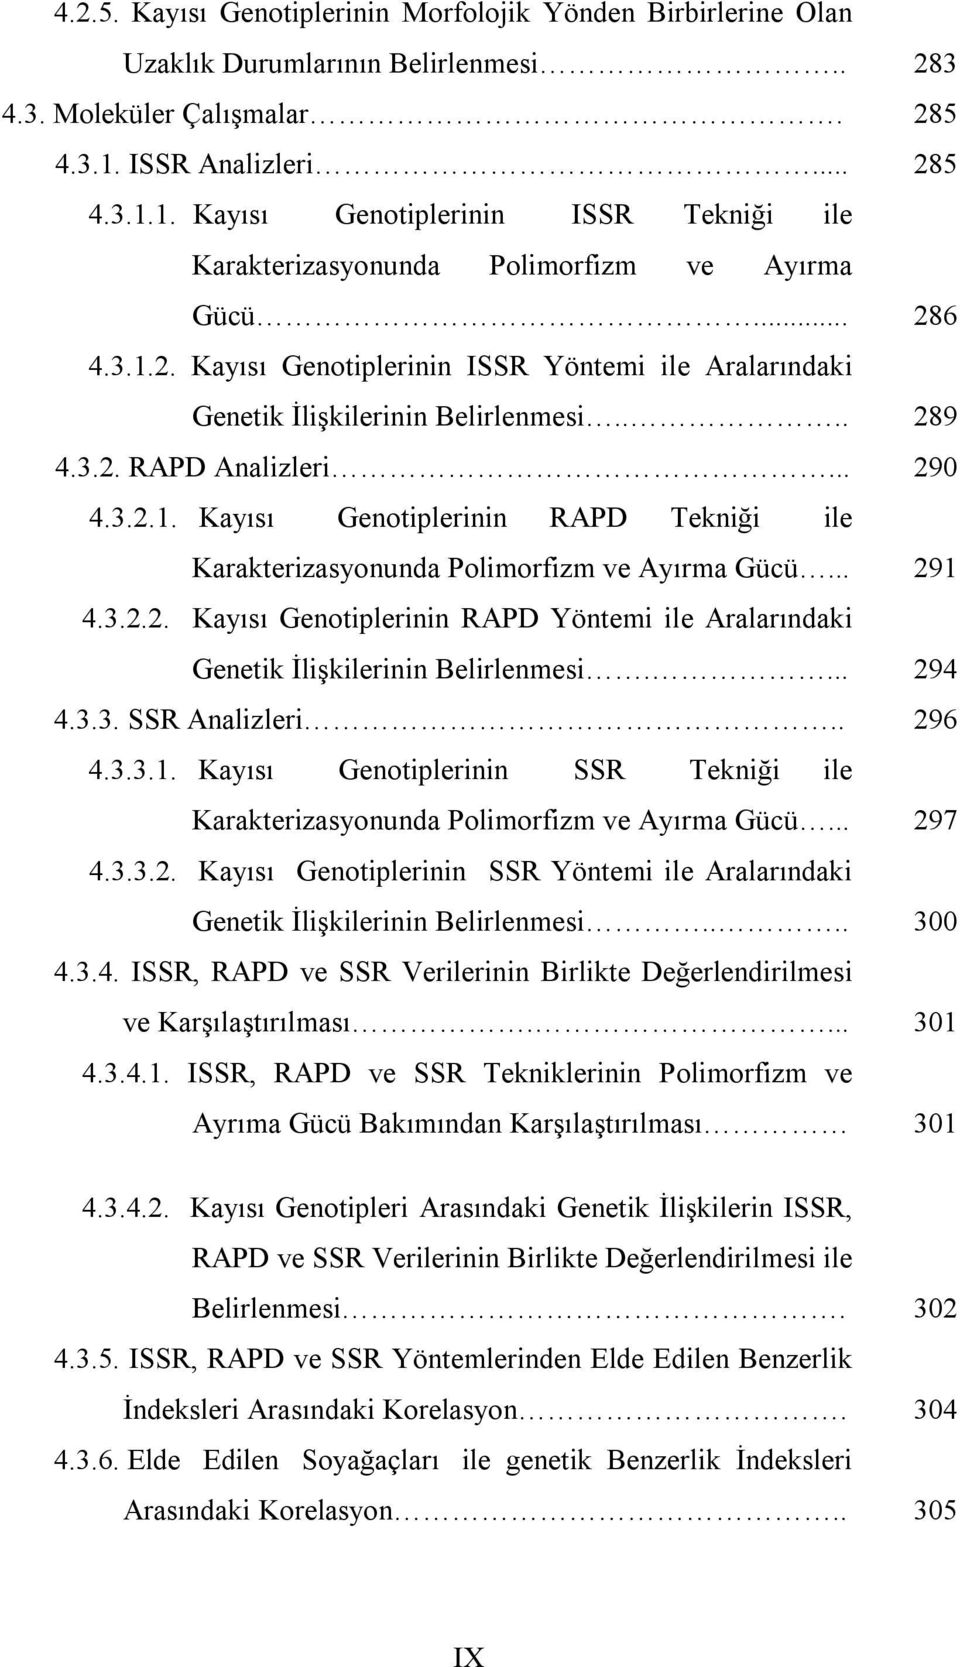 ... 289 4.3.2. RAPD Analizleri... 290 4.3.2.1. Kayısı Genotiplerinin RAPD Tekniği ile Karakterizasyonunda Polimorfizm ve Ayırma Gücü... 291 4.3.2.2. Kayısı Genotiplerinin RAPD Yöntemi ile Aralarındaki Genetik İlişkilerinin Belirlenmesi.